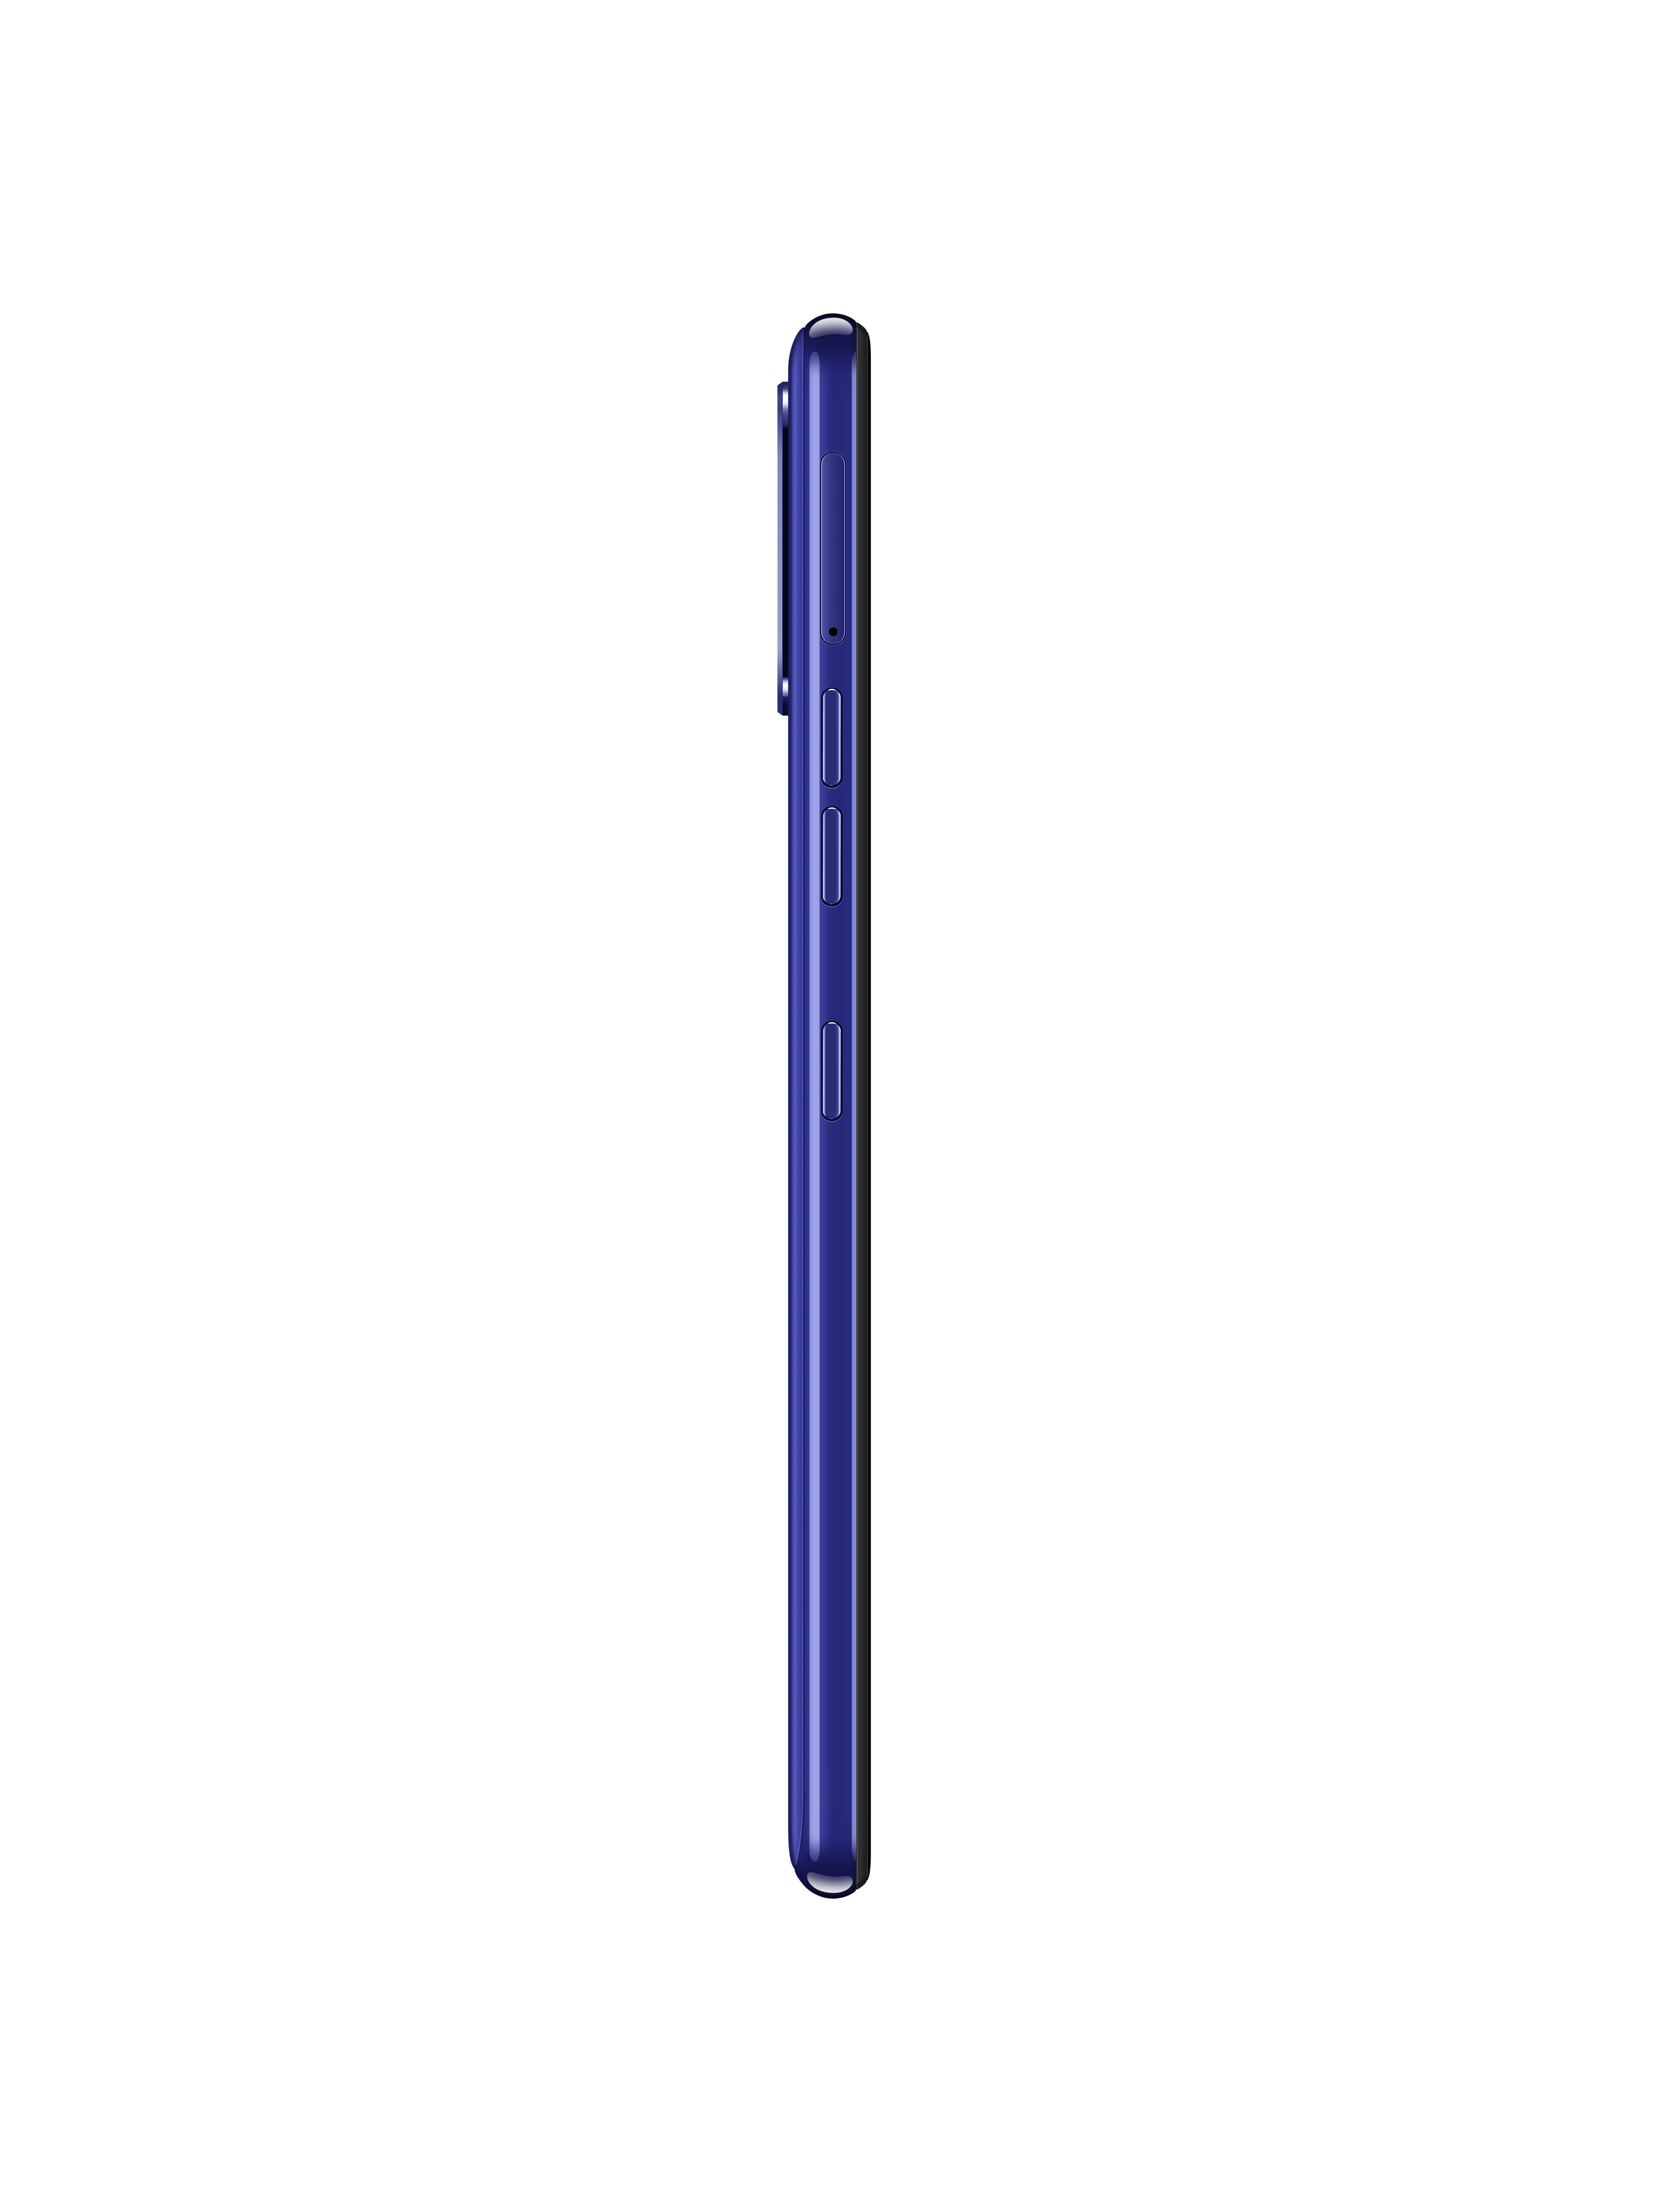 Dual Blau K52 GB SIM 64 LG